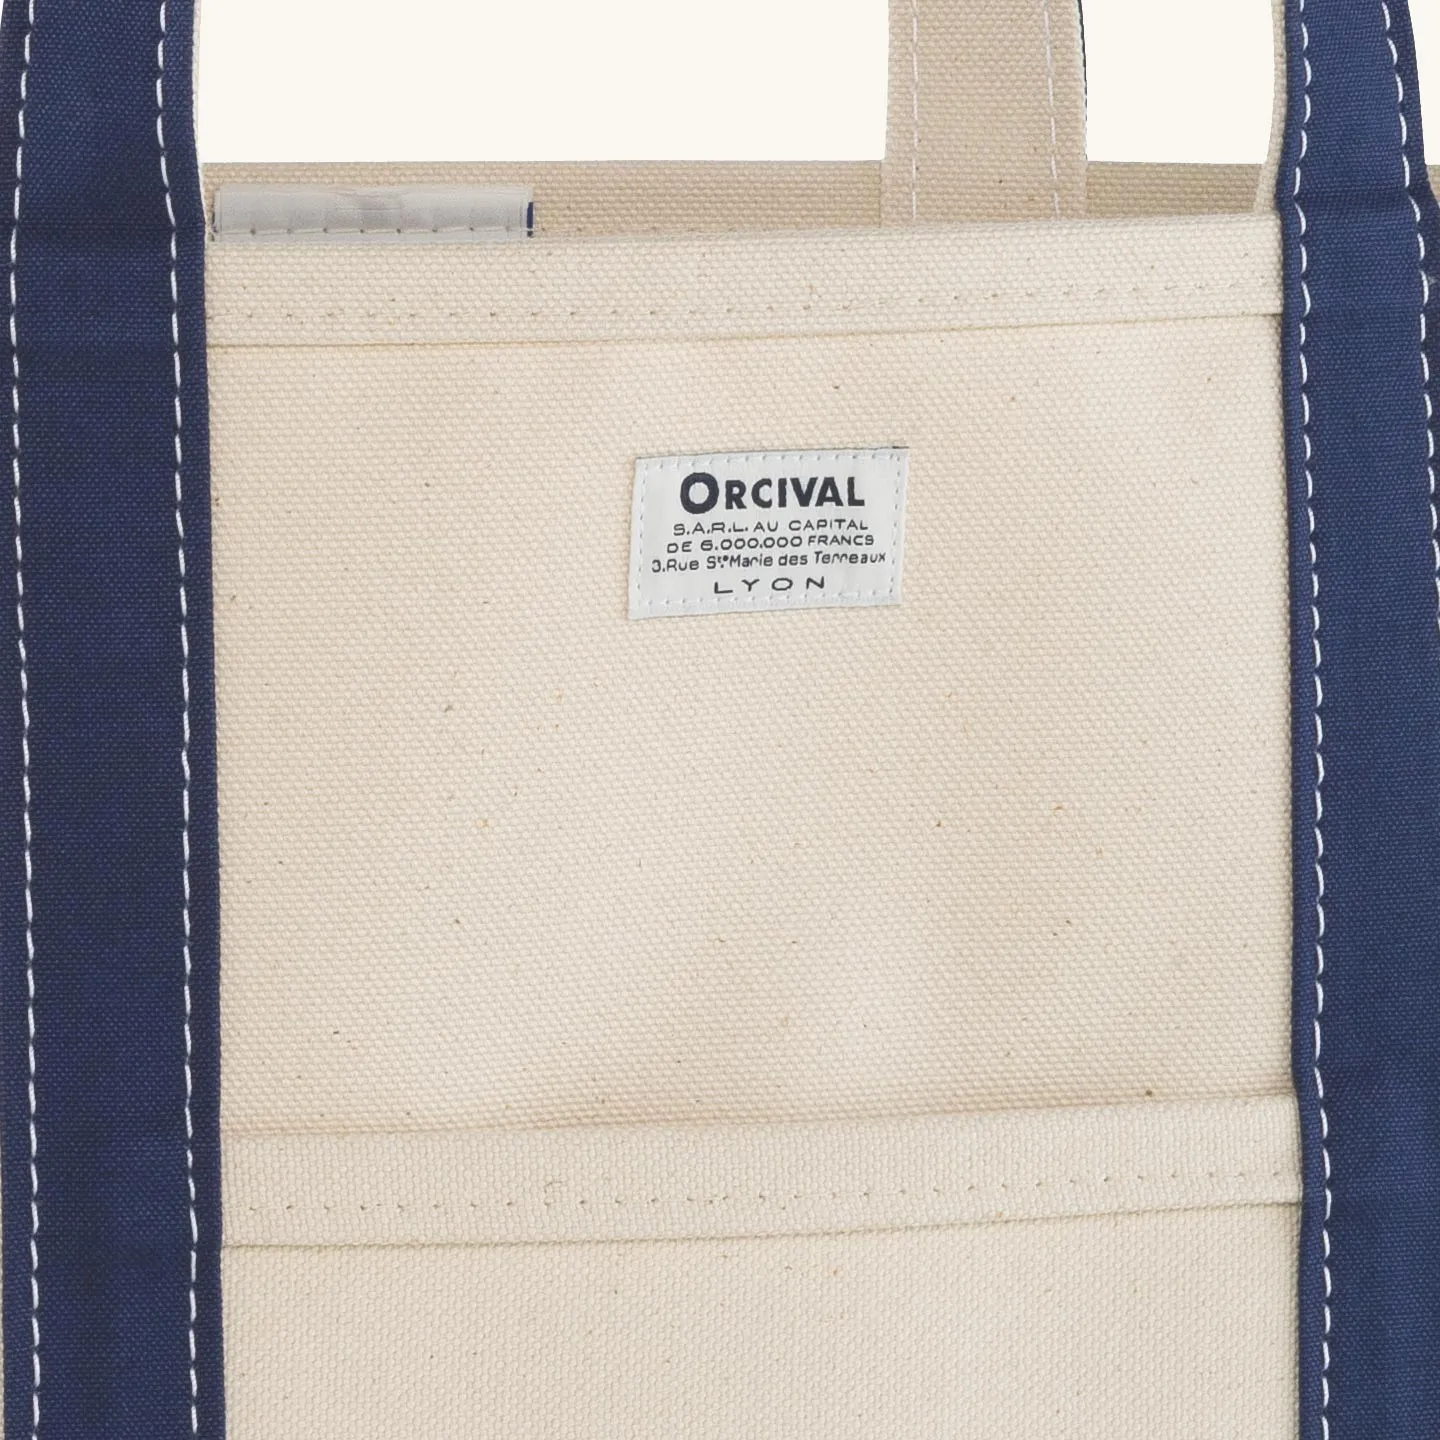 Le sac iconique Orcival Orcival